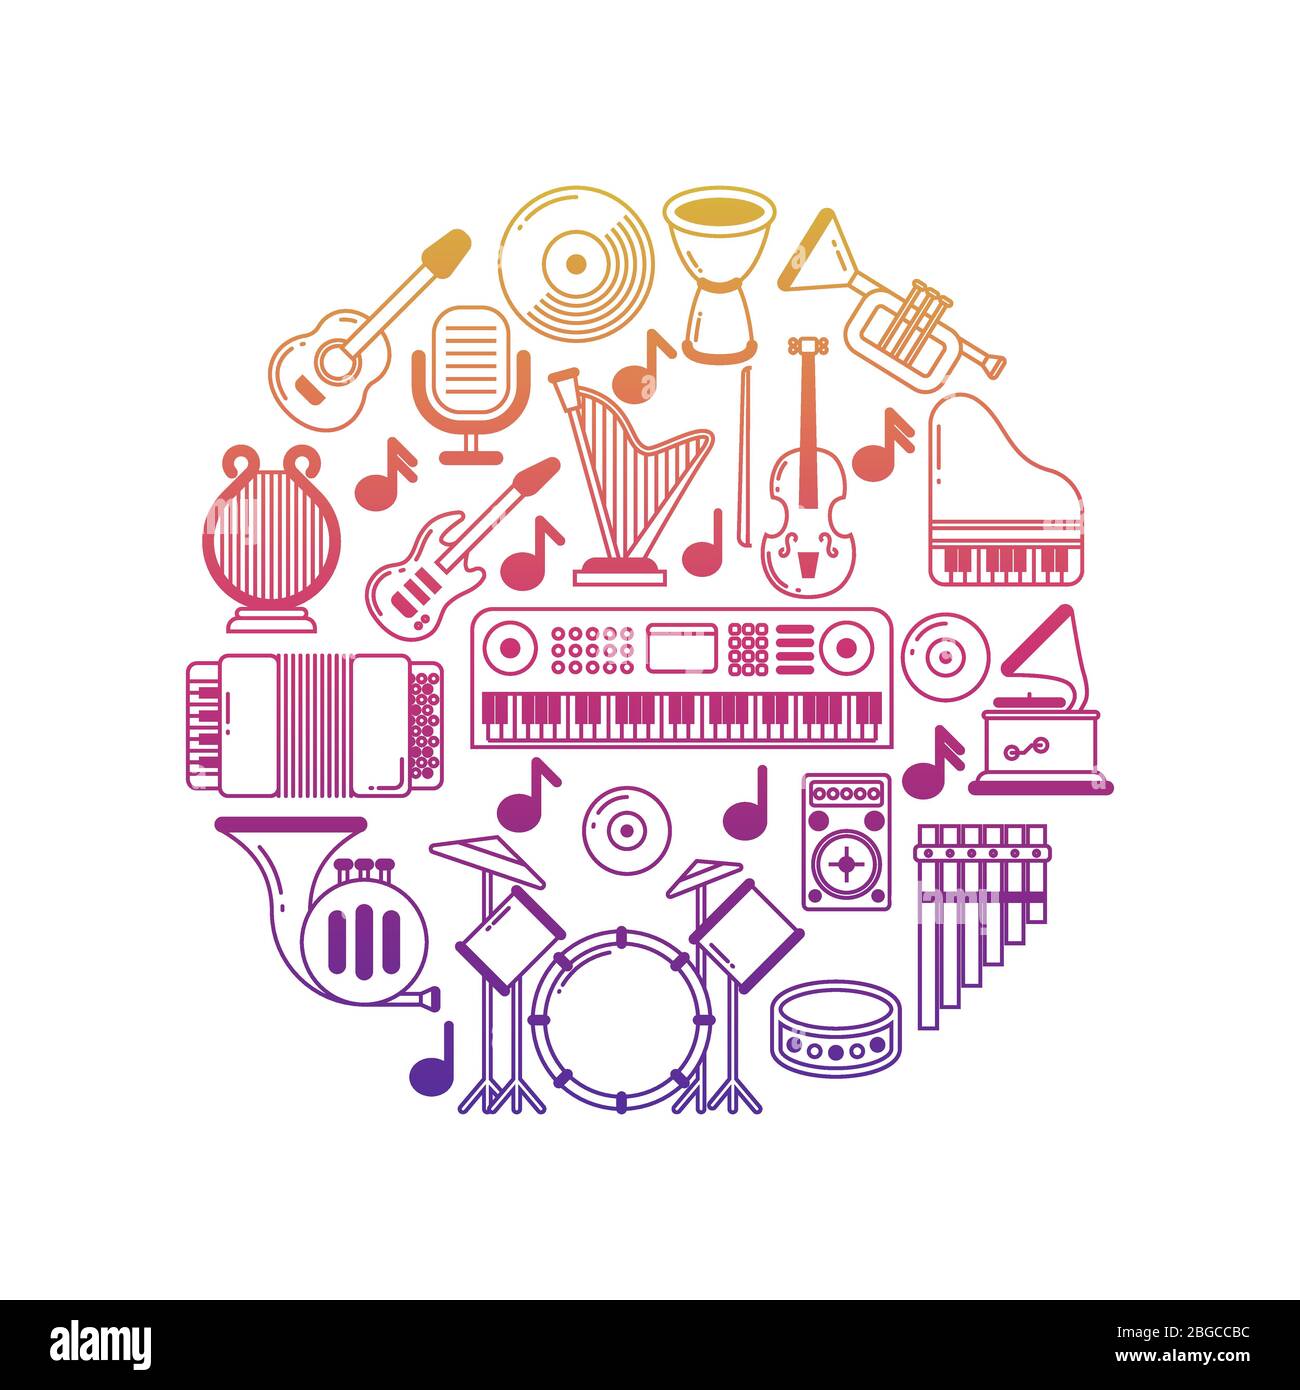 Affiche de musique vectorielle lumineuse avec icônes d'instruments de musique sur l'illustration ronde Illustration de Vecteur